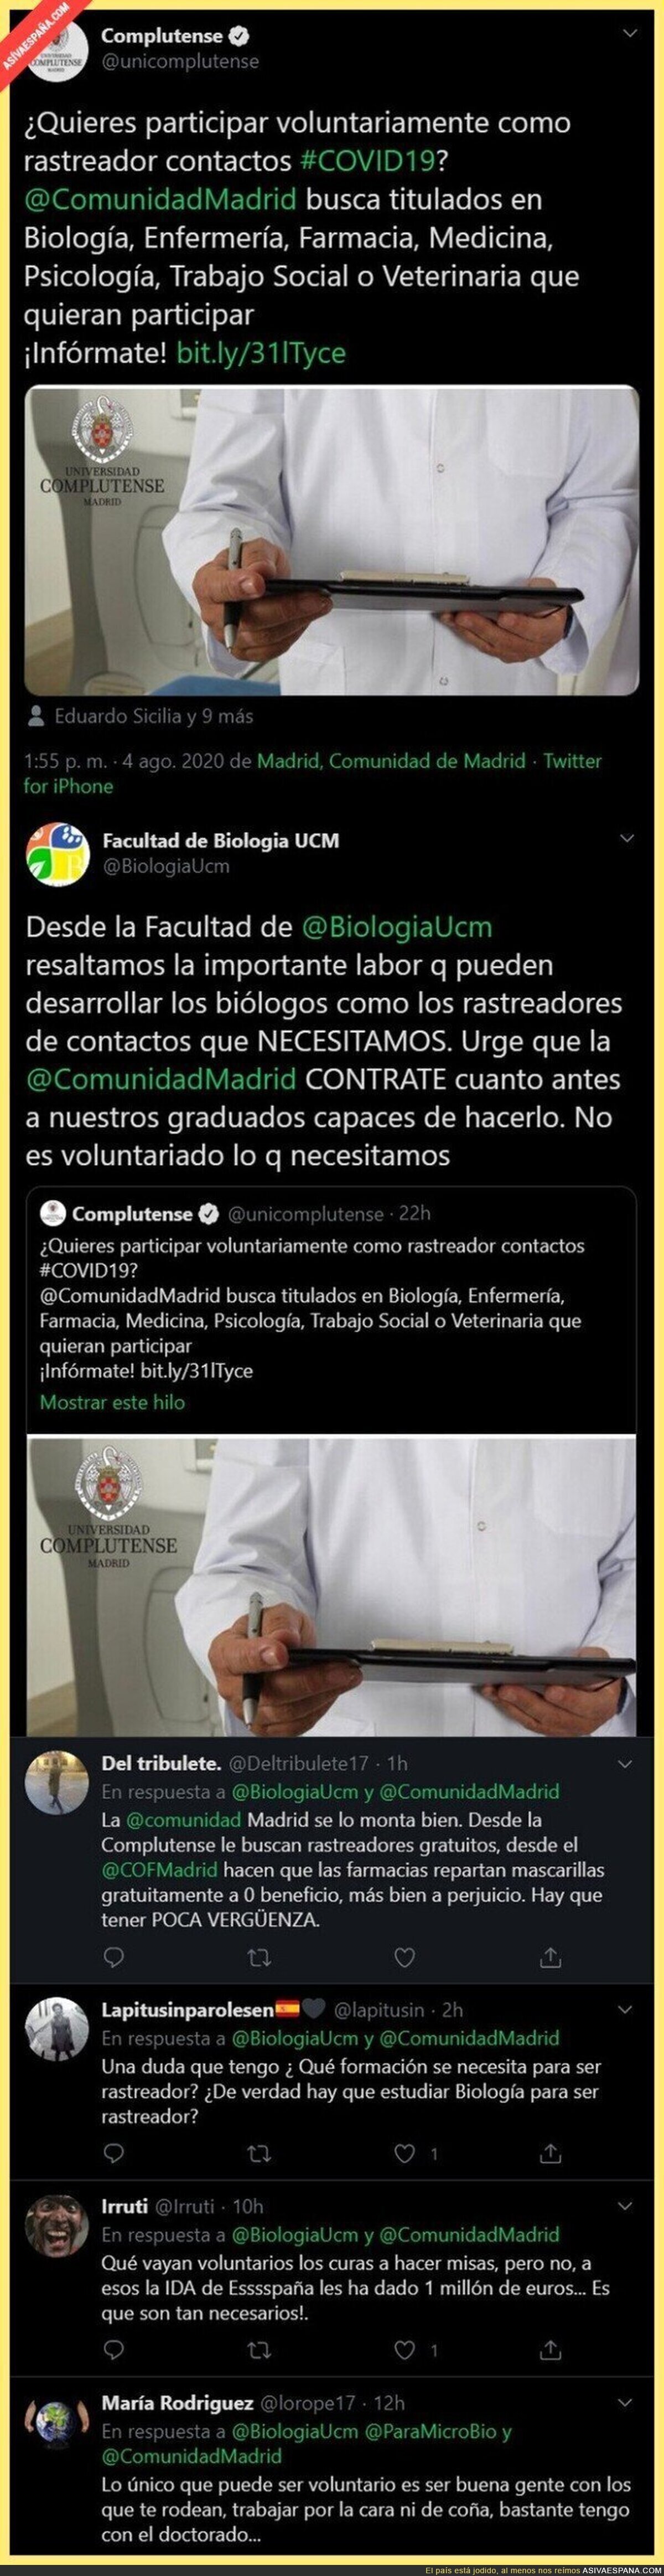 La facultad de Biología de la UCM le da un ZASCA monumental a la Complutense de Madrid por buscar voluntarios contra el COVID19